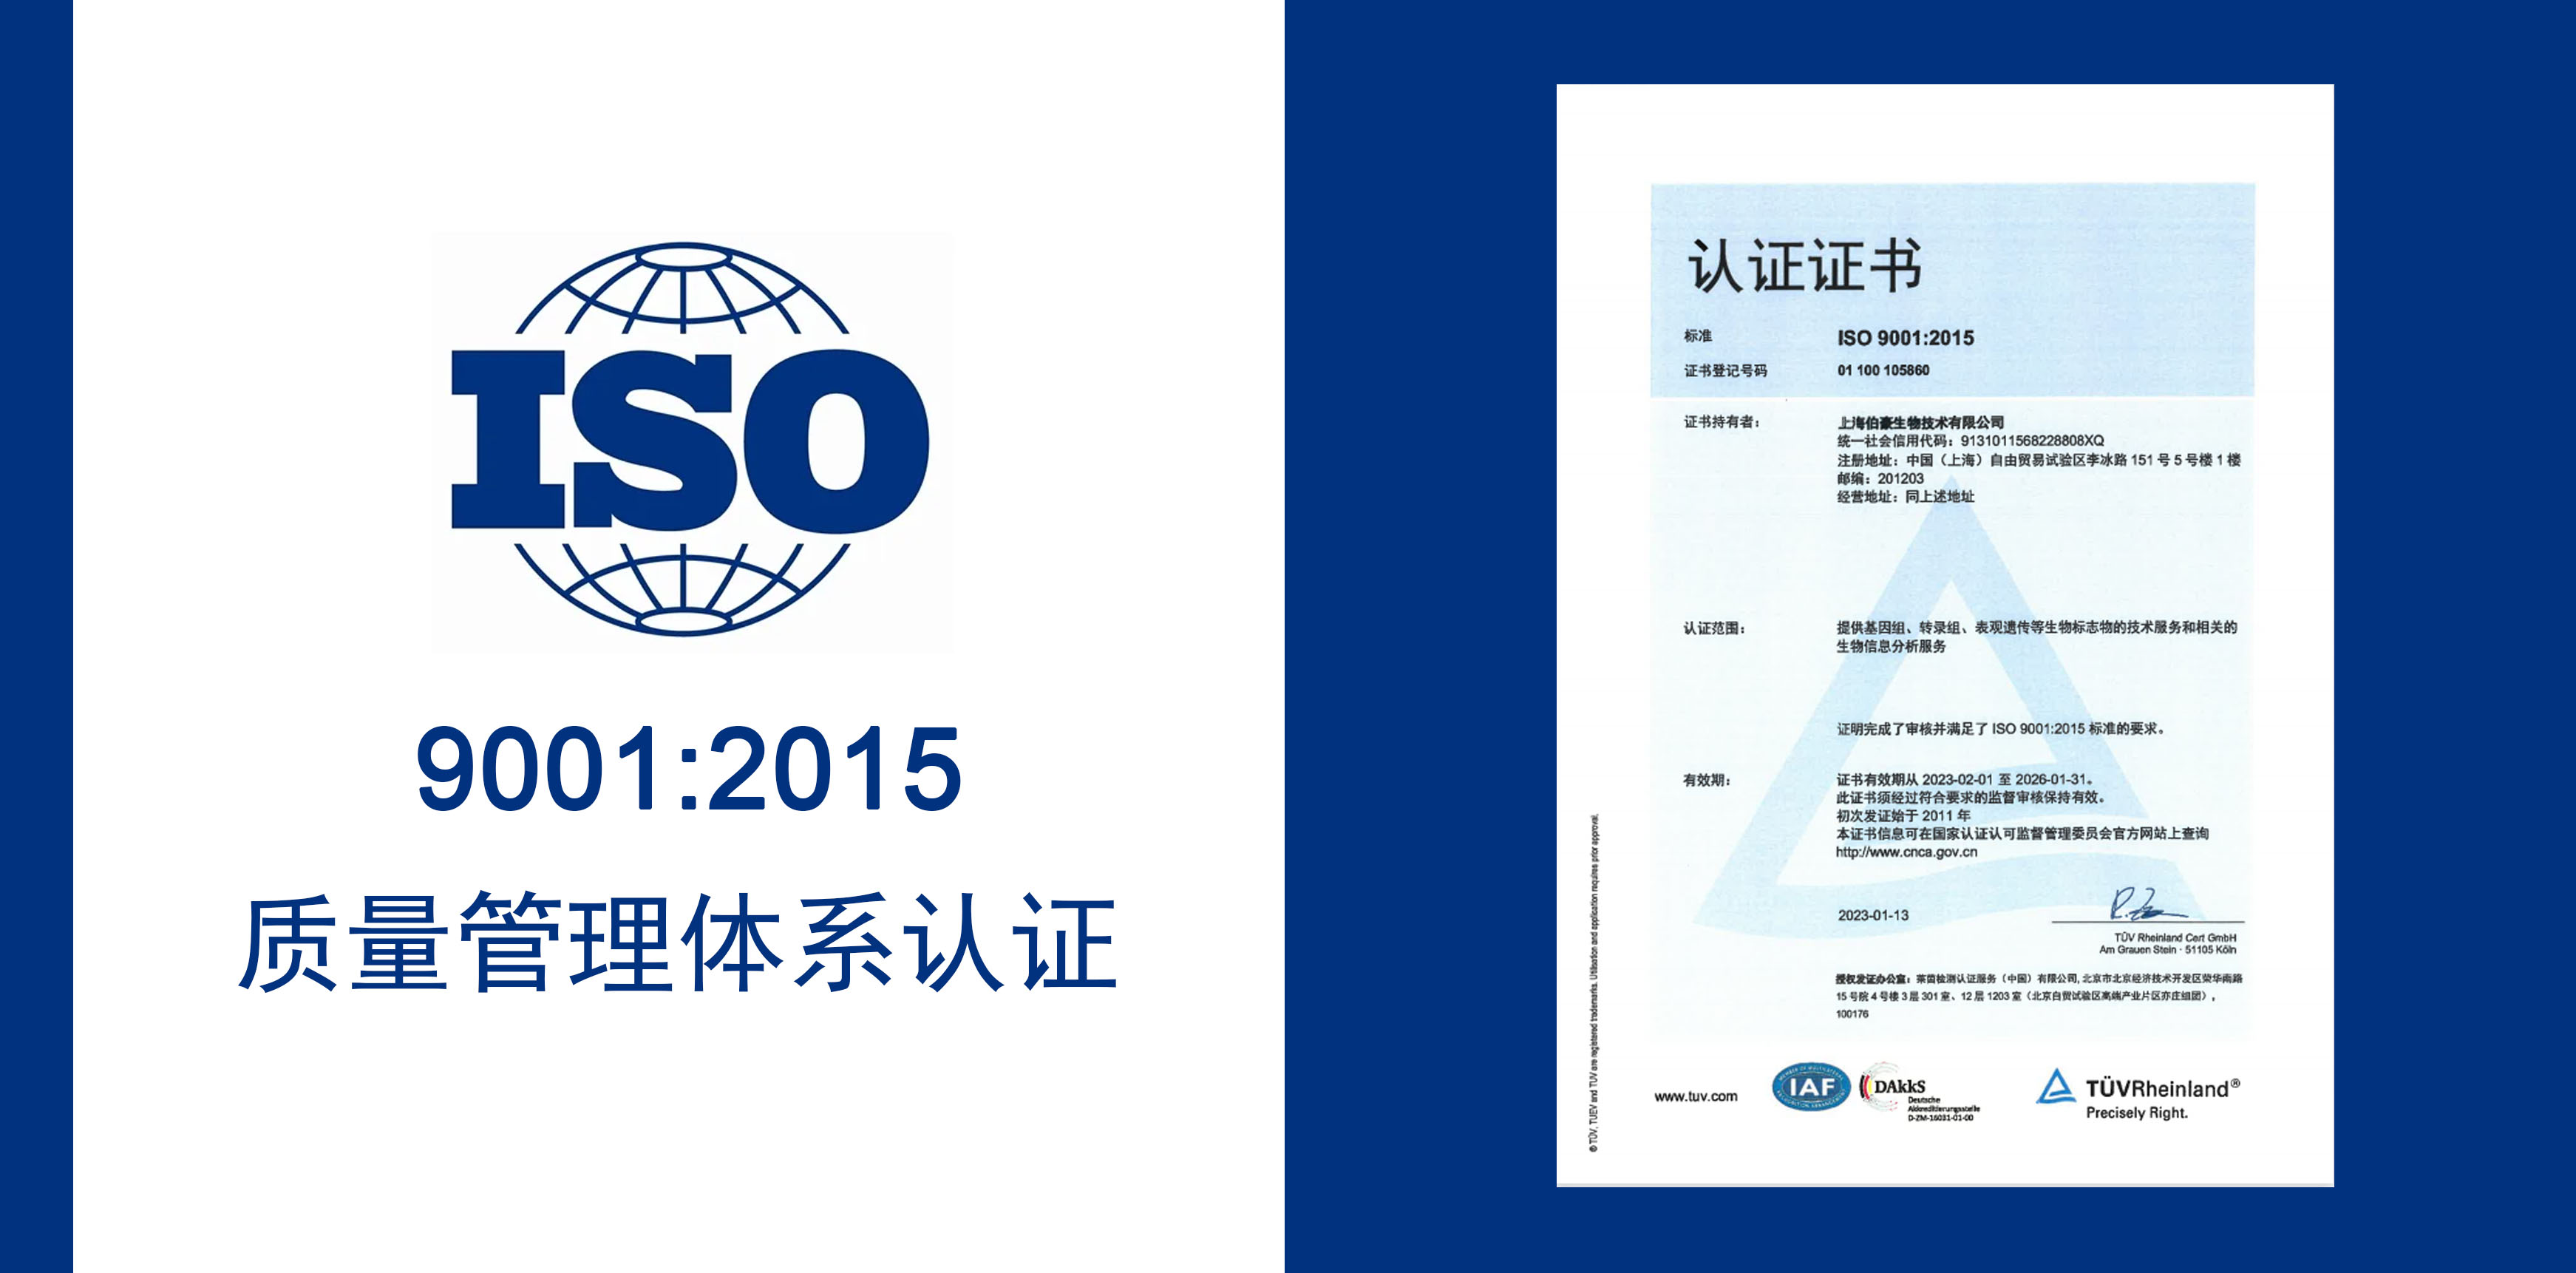 太阳成集团tyc539生物获得 IOS9001 质量服务体系认证